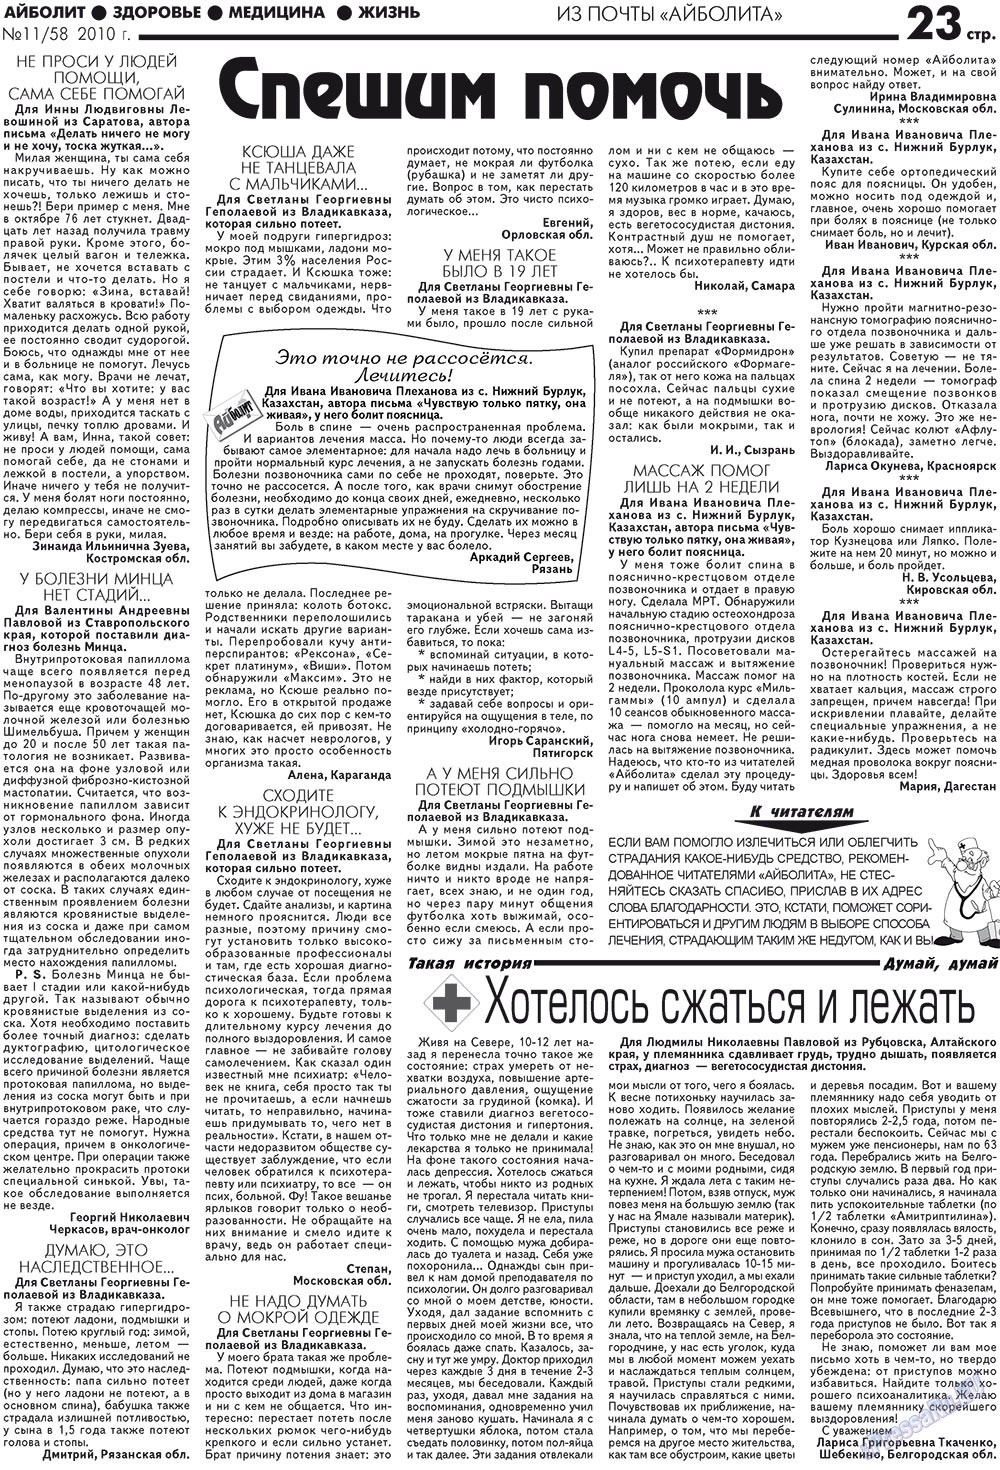 АйБолит, газета. 2010 №11 стр.23